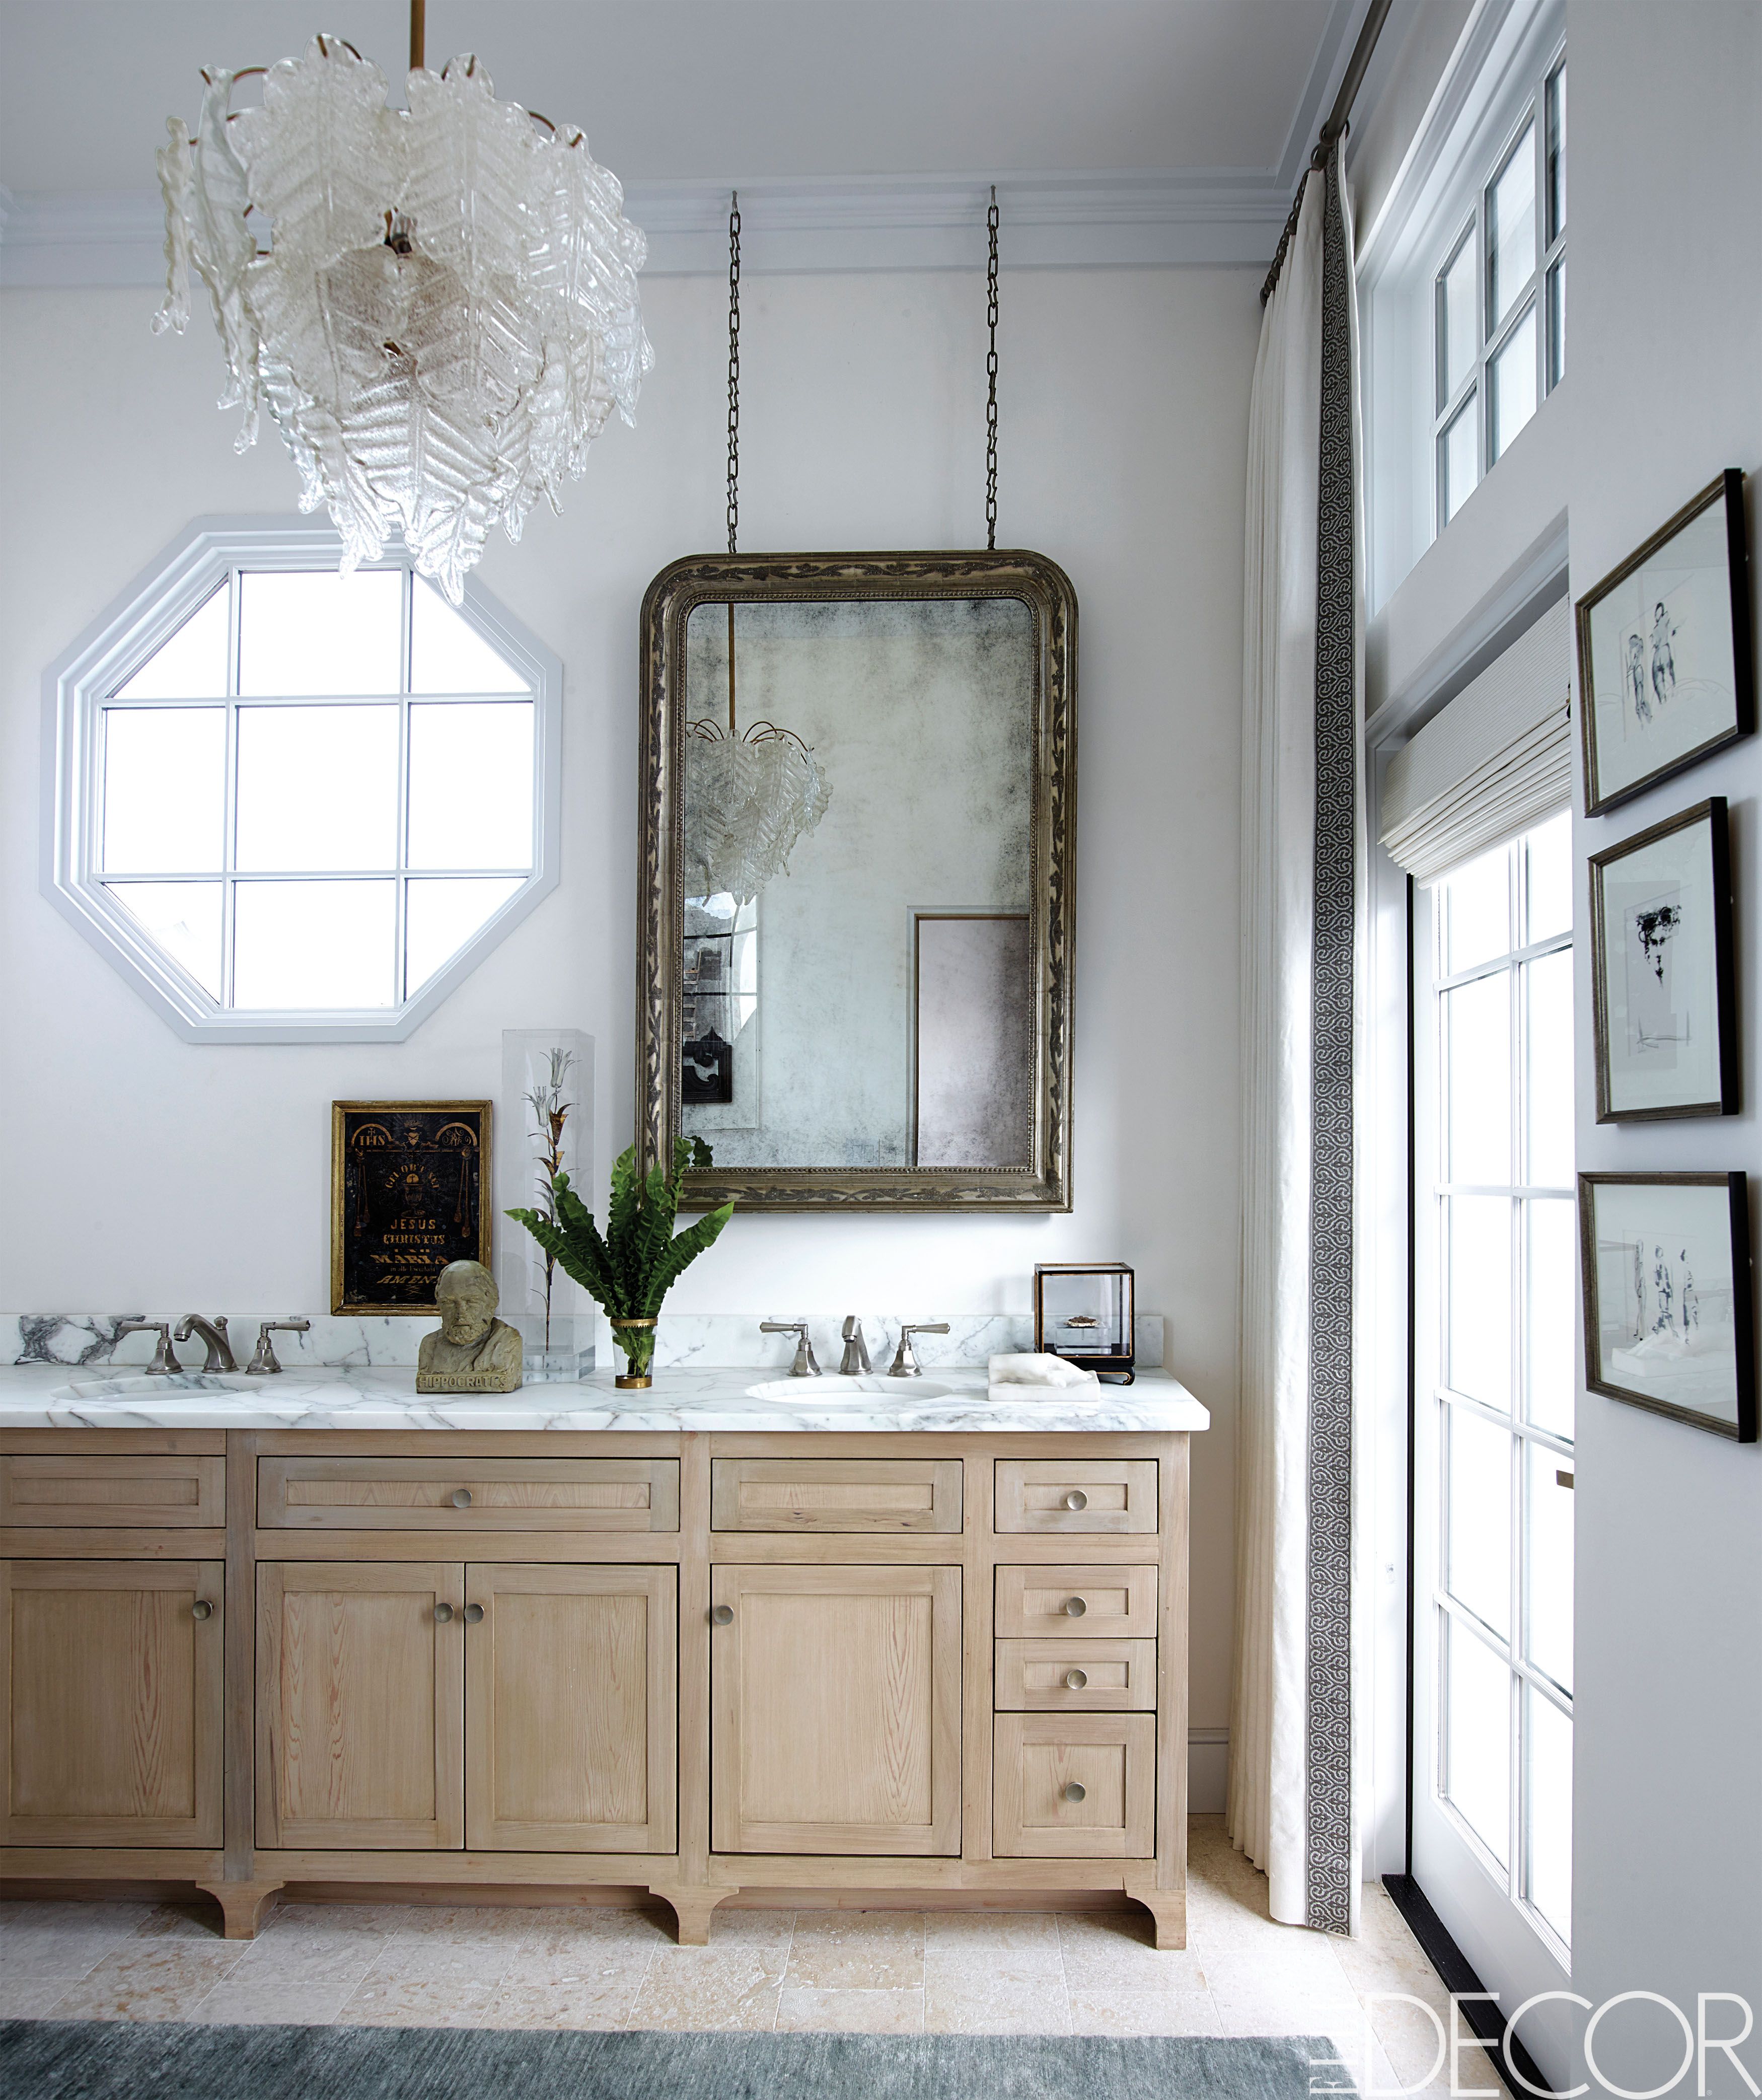 Bathroom Vanity Mirrors For Interior Design, Small Vanity Bathroom Mirror